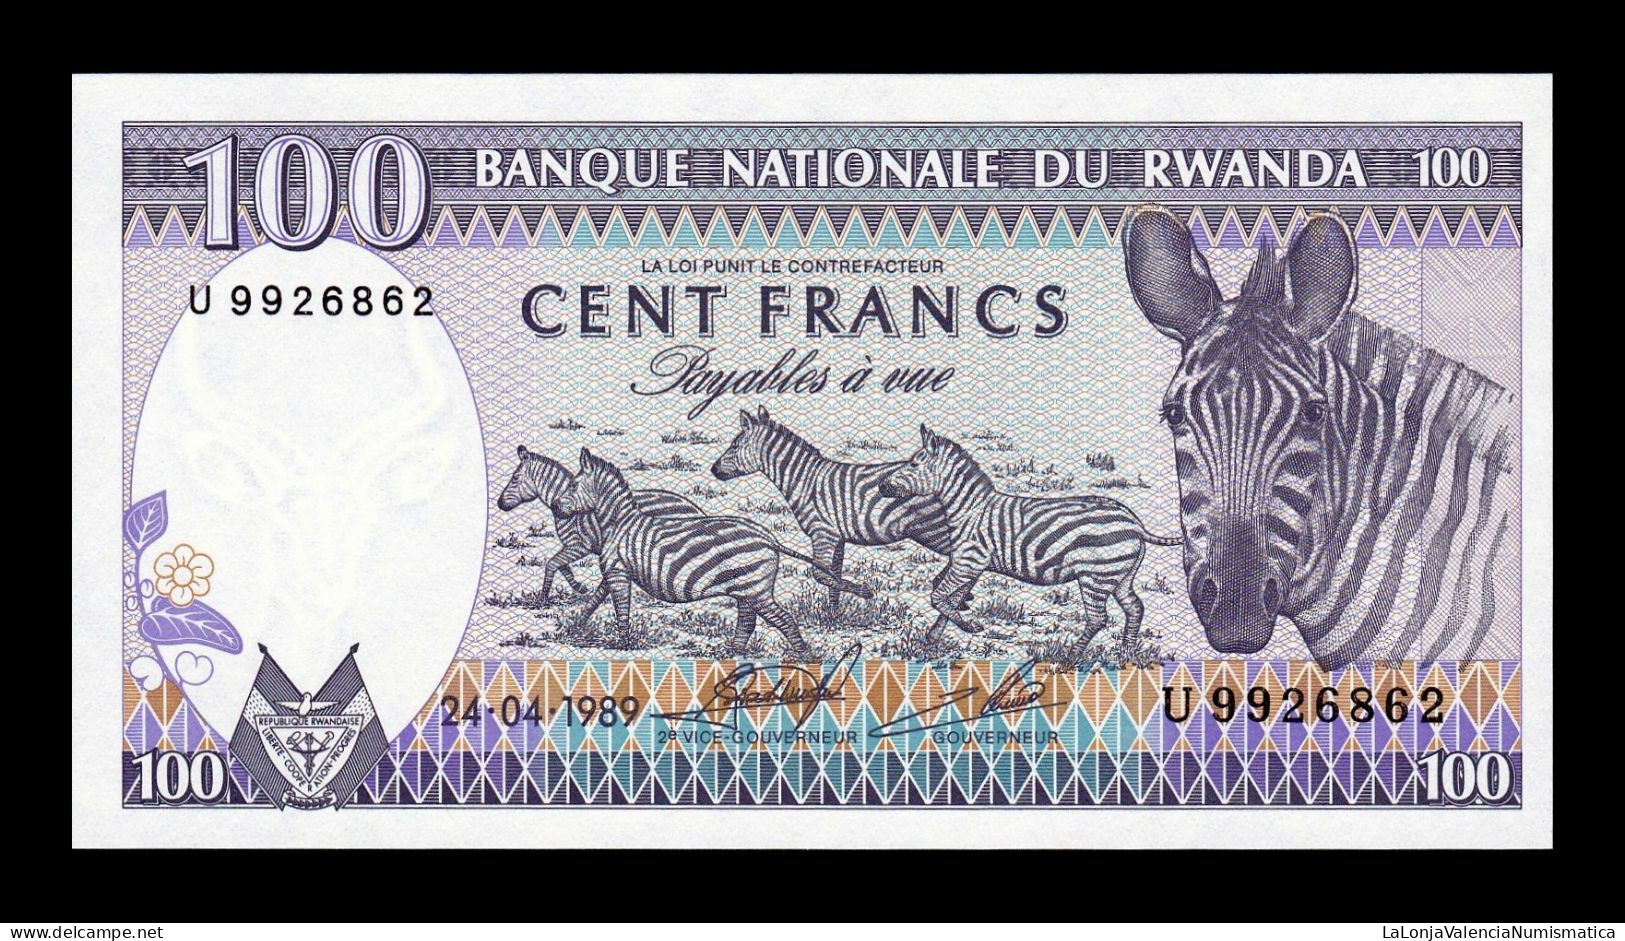 Ruanda Rwanda 100 Francs 1989 Pick 19 Sc Unc - Ruanda